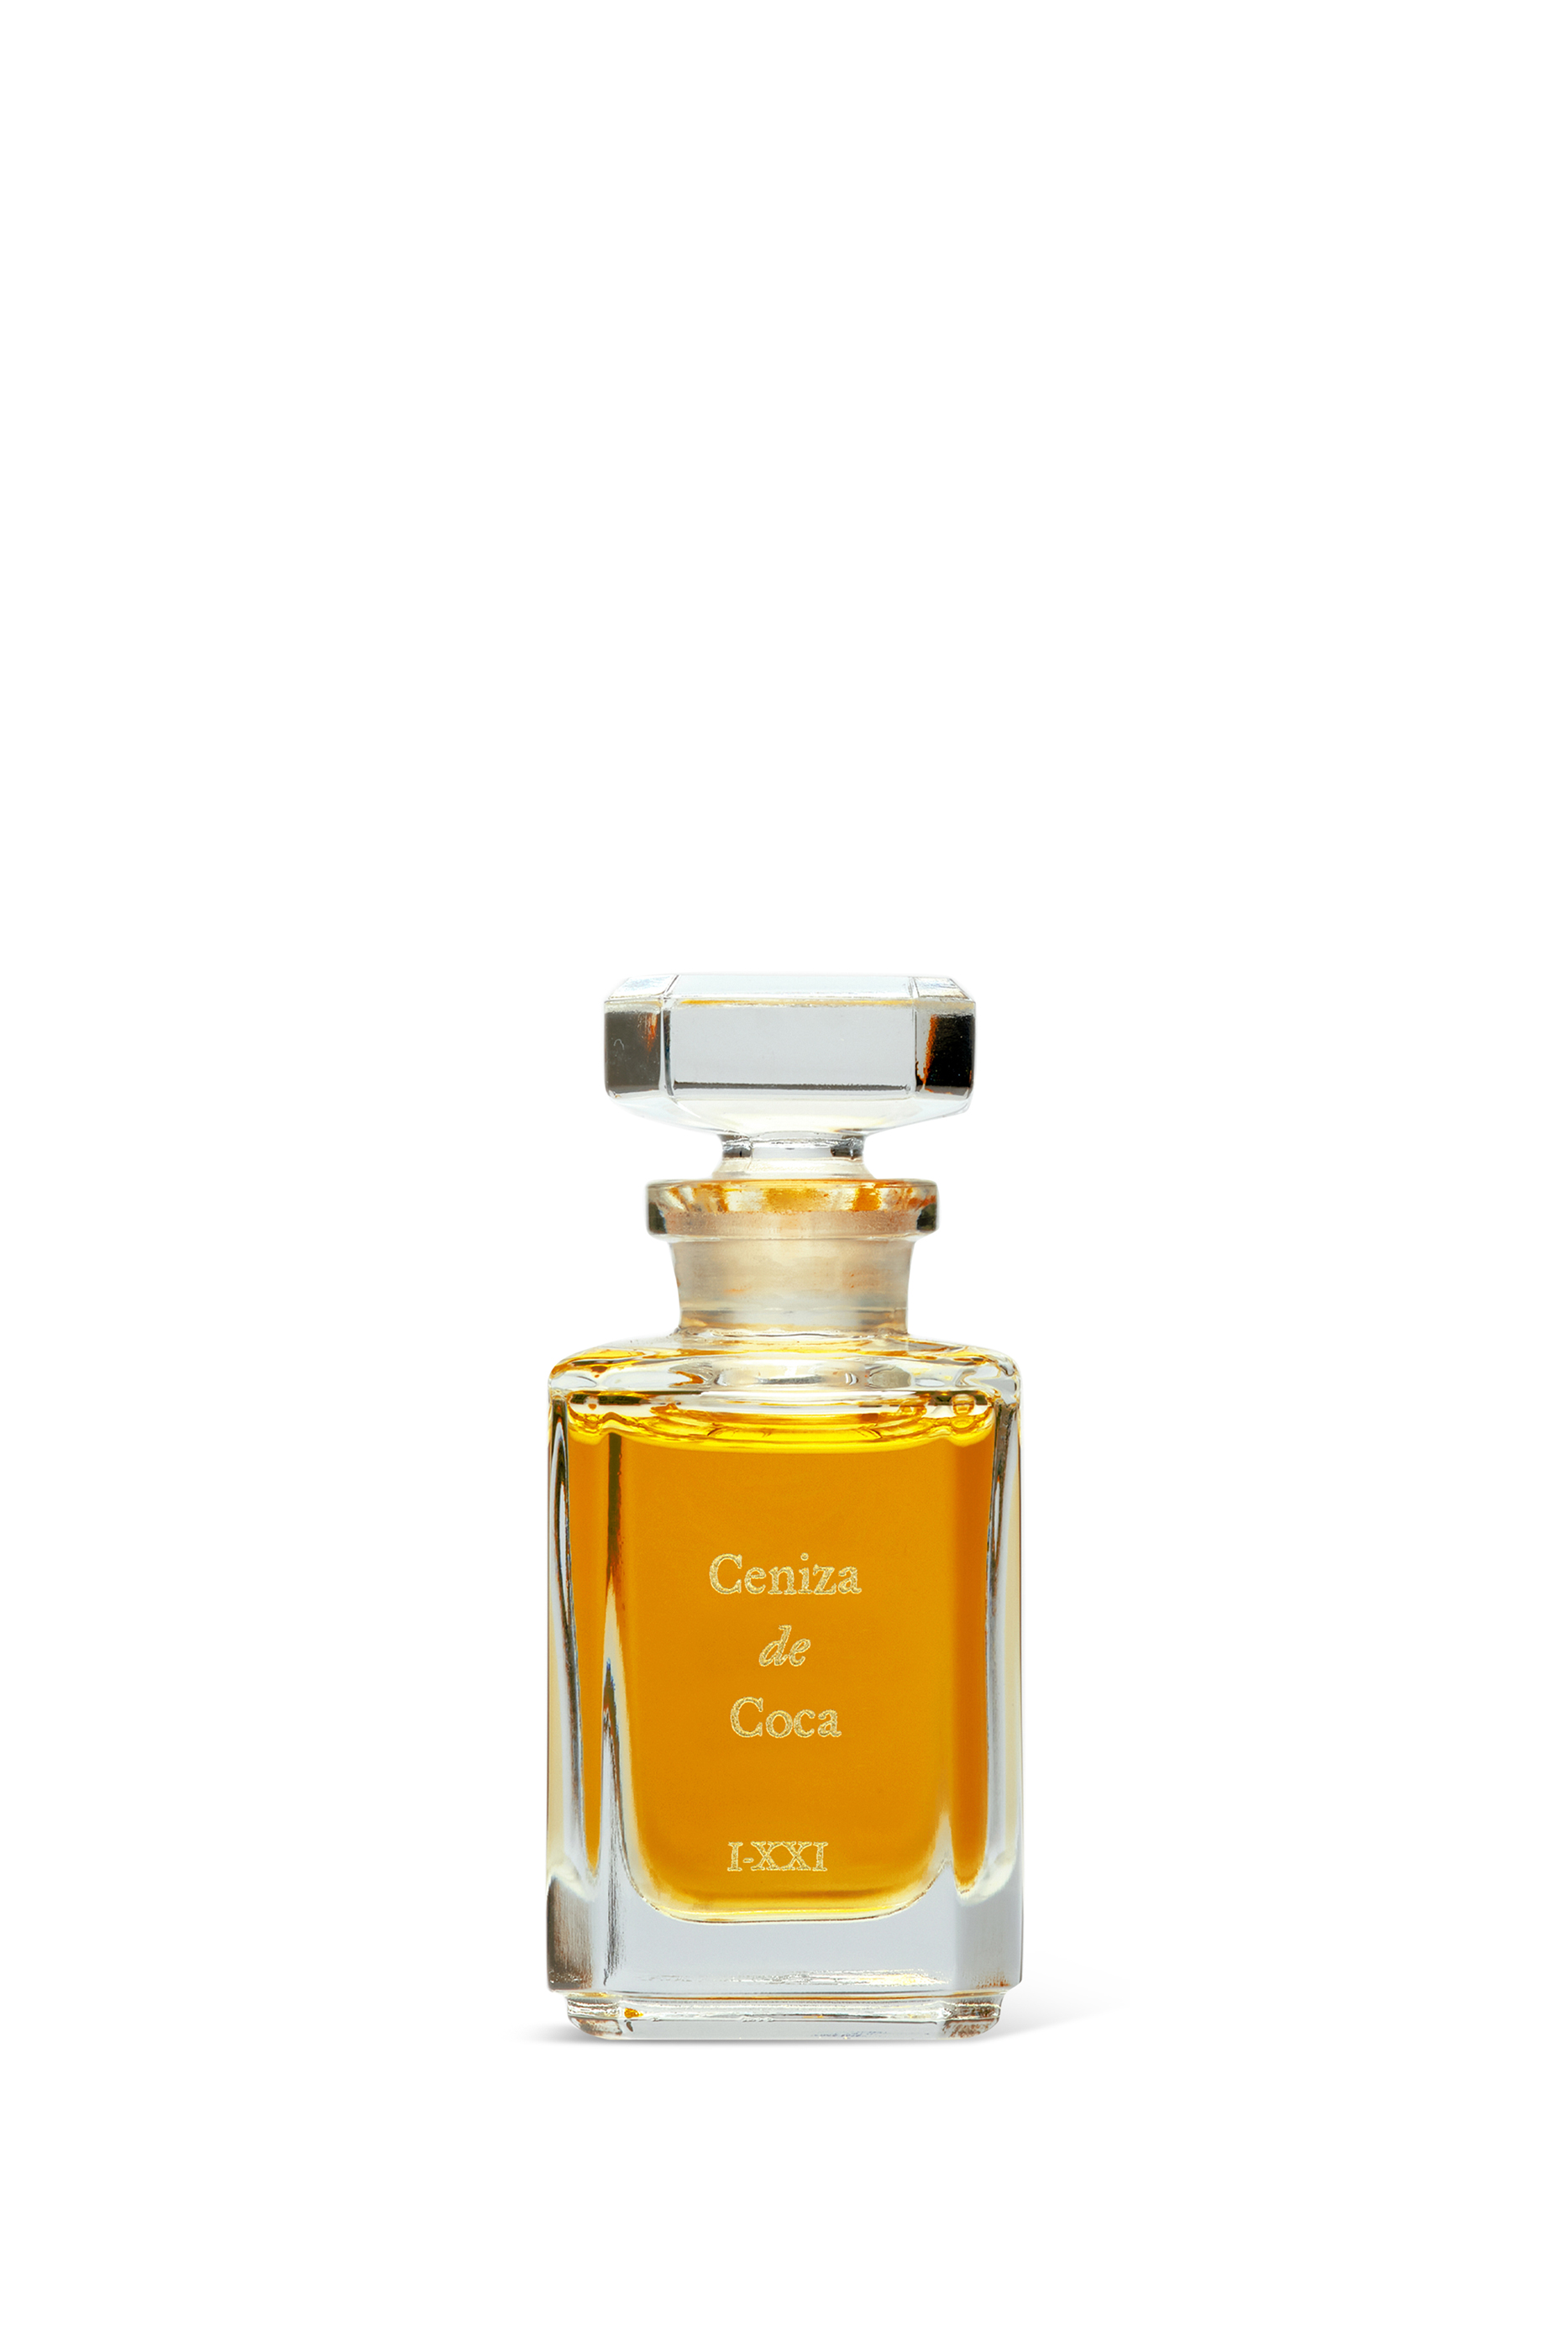 Buy Fueguia 1833 Ceniza de Coca Perfume Oil for Unisex